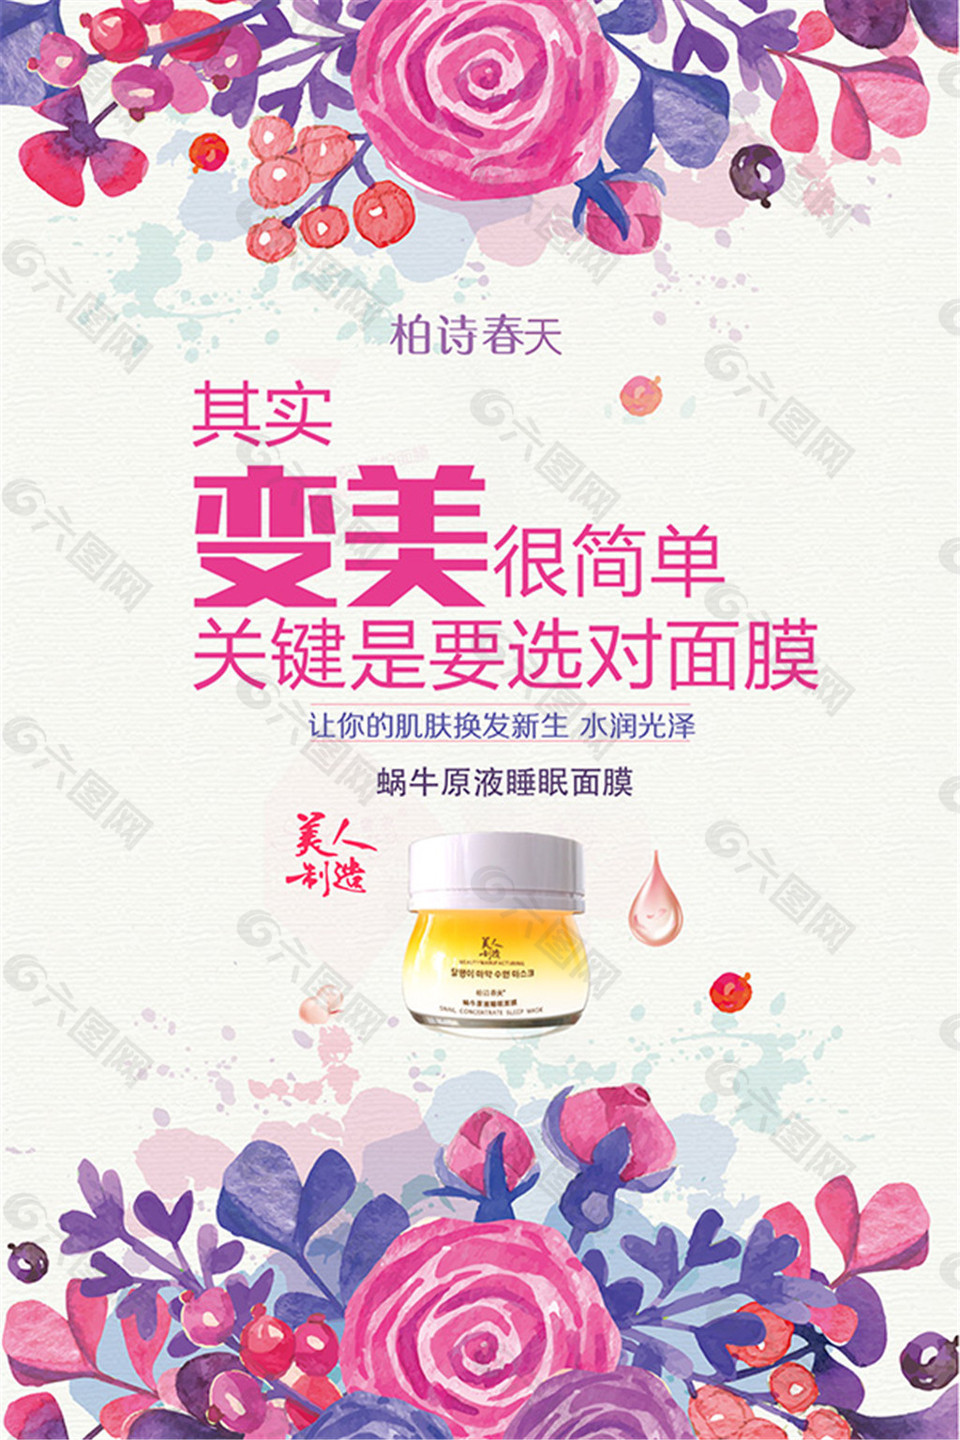 化妆品pop海报电商淘宝素材免费下载(图片编号:8105937)